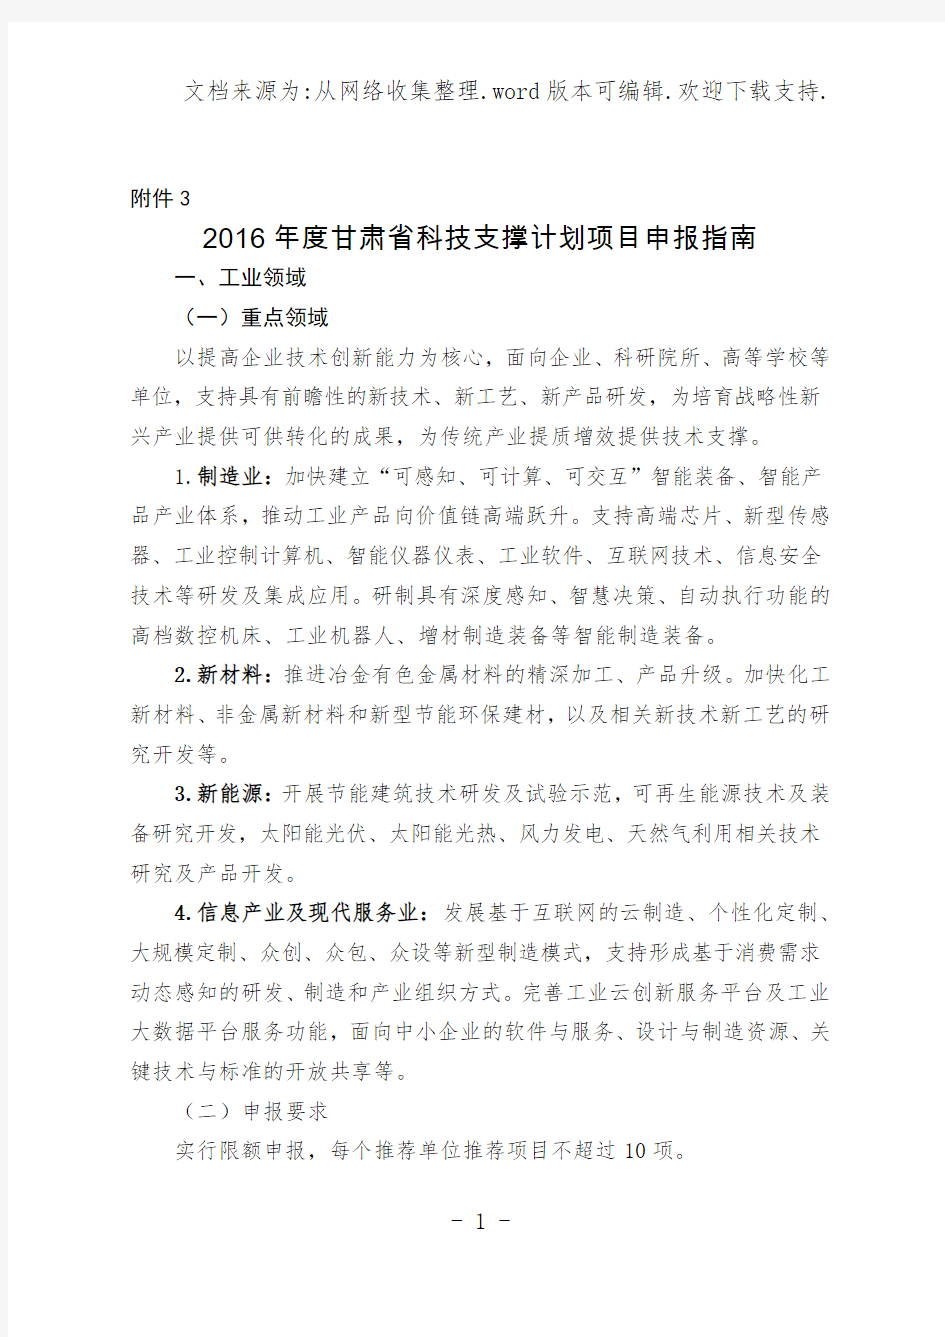 2020年度甘肃省科技支撑计划项目申报指南